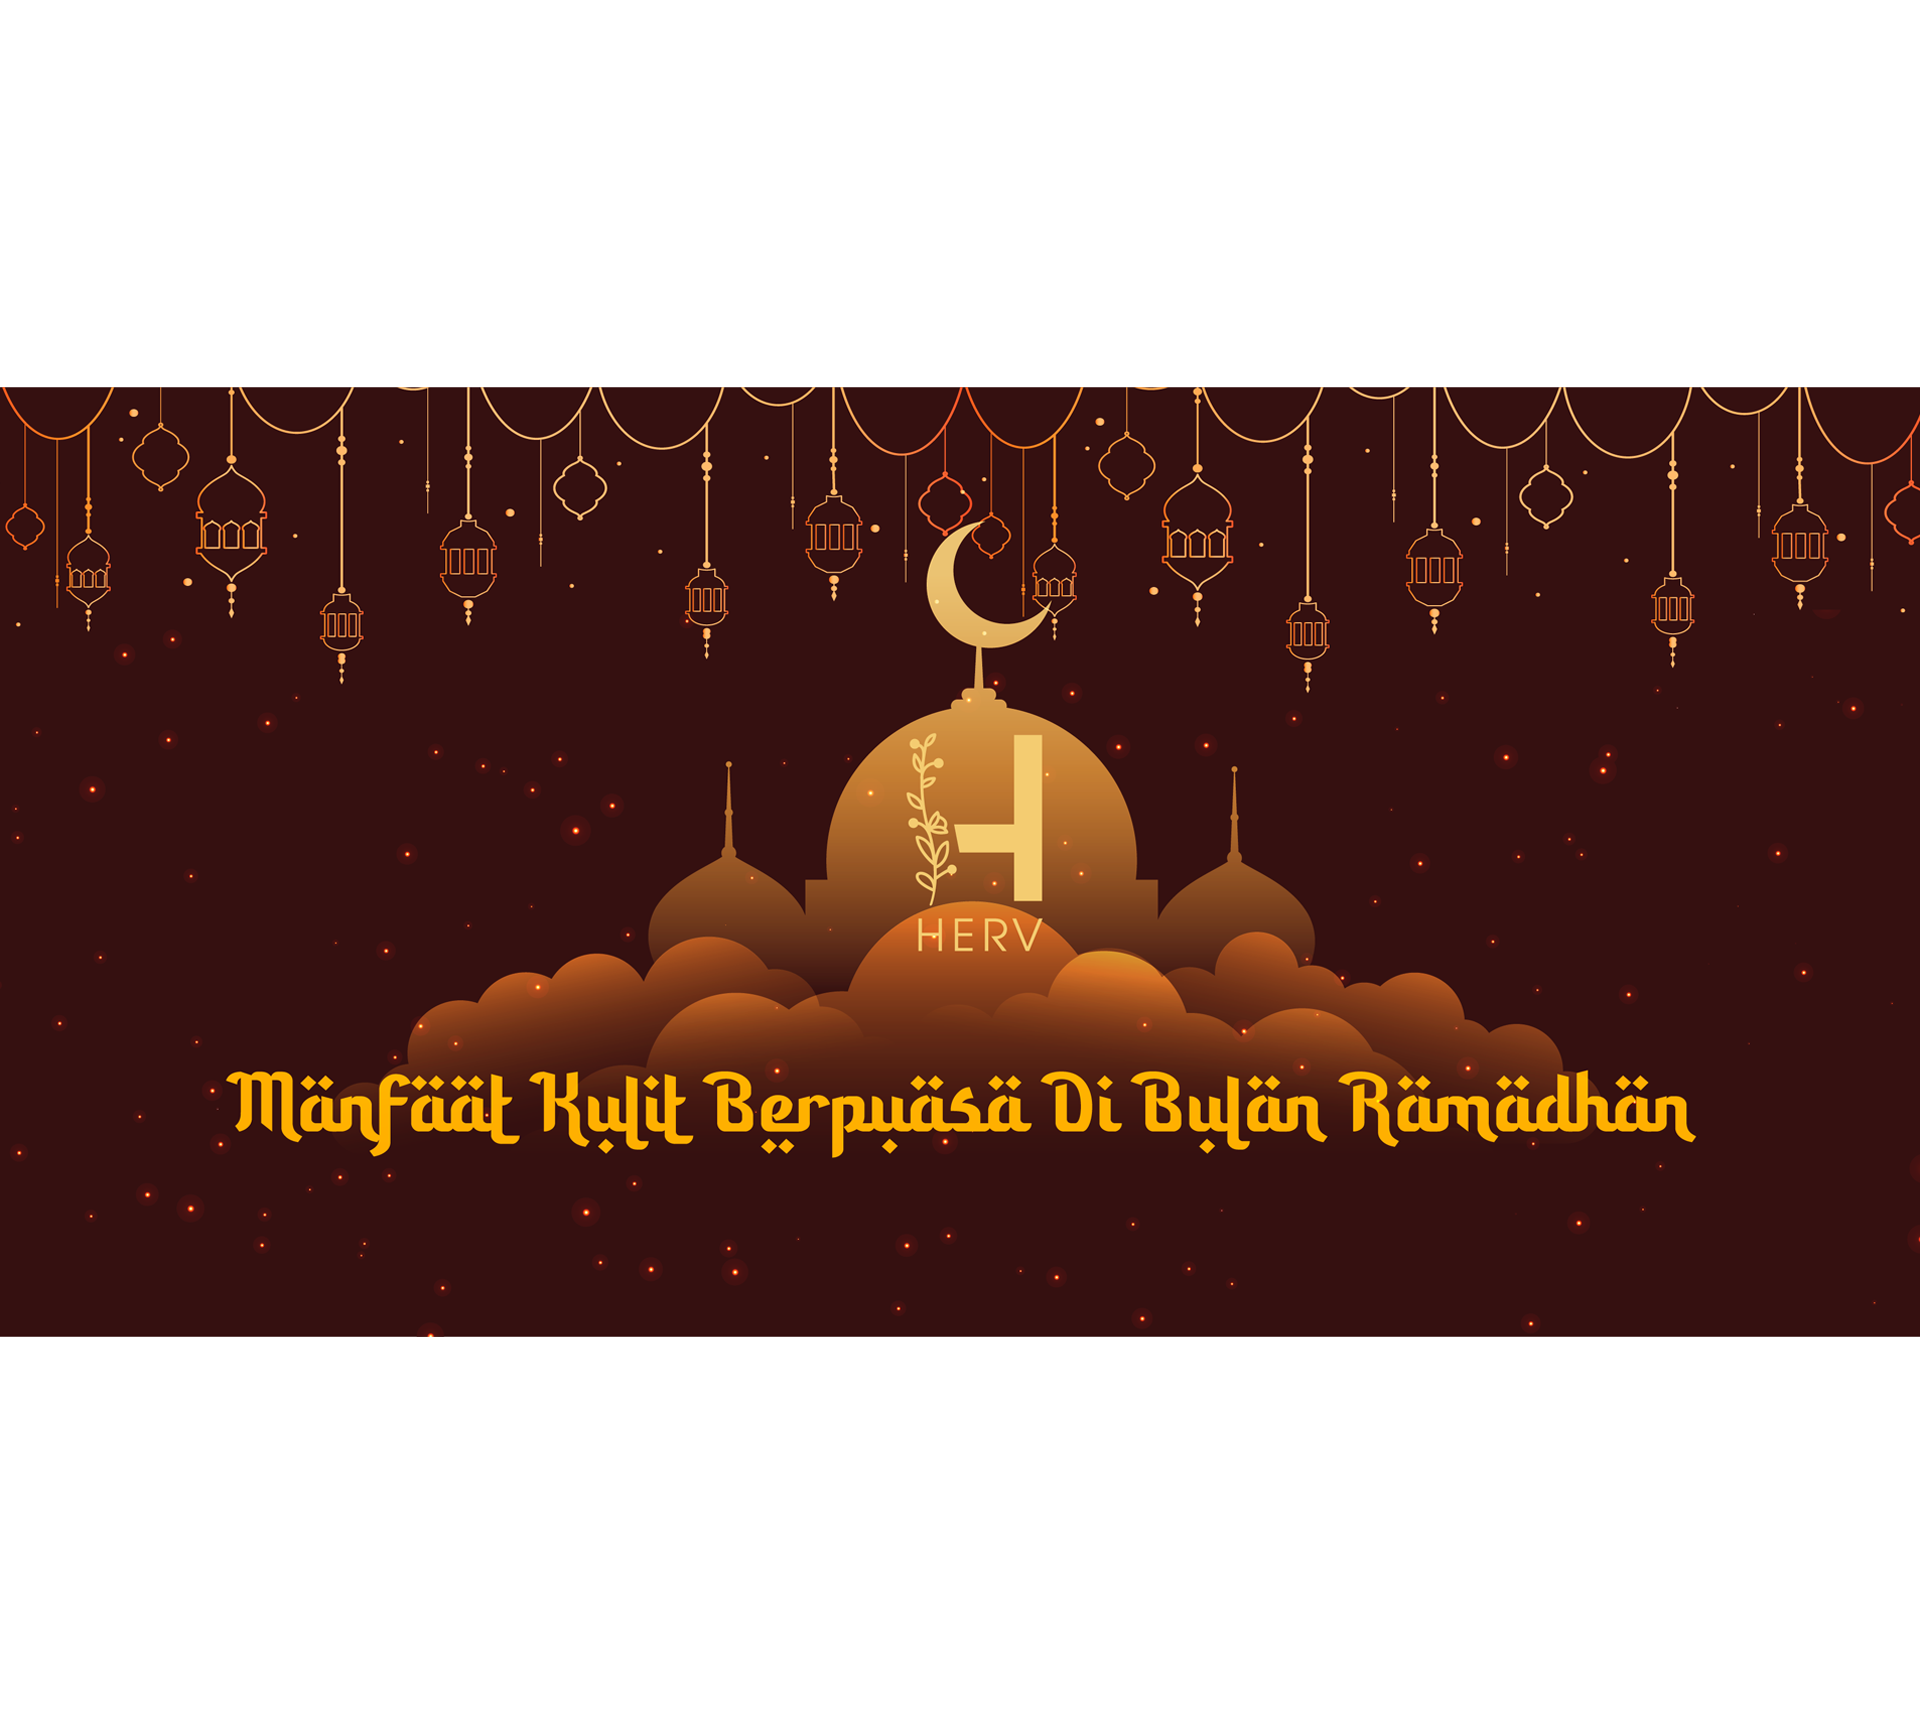 Manfaat Kulit Berpuasa Di Bulan Ramadhan